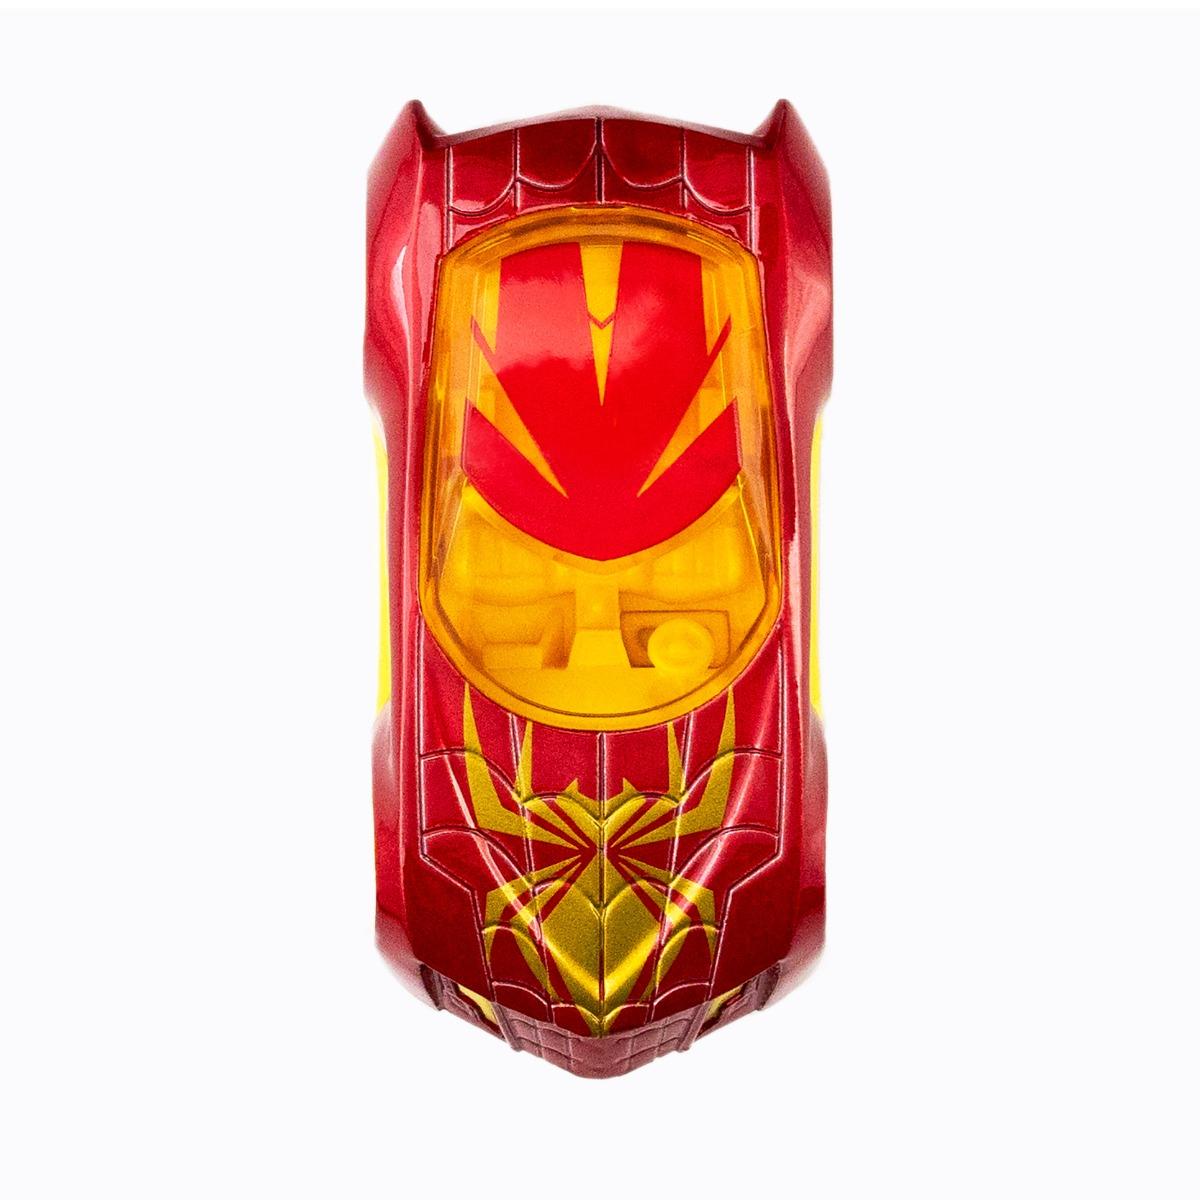 Đồ Chơi Siêu Xe Marvel Racing - Icon Iron Spider 10Q422TUR-012